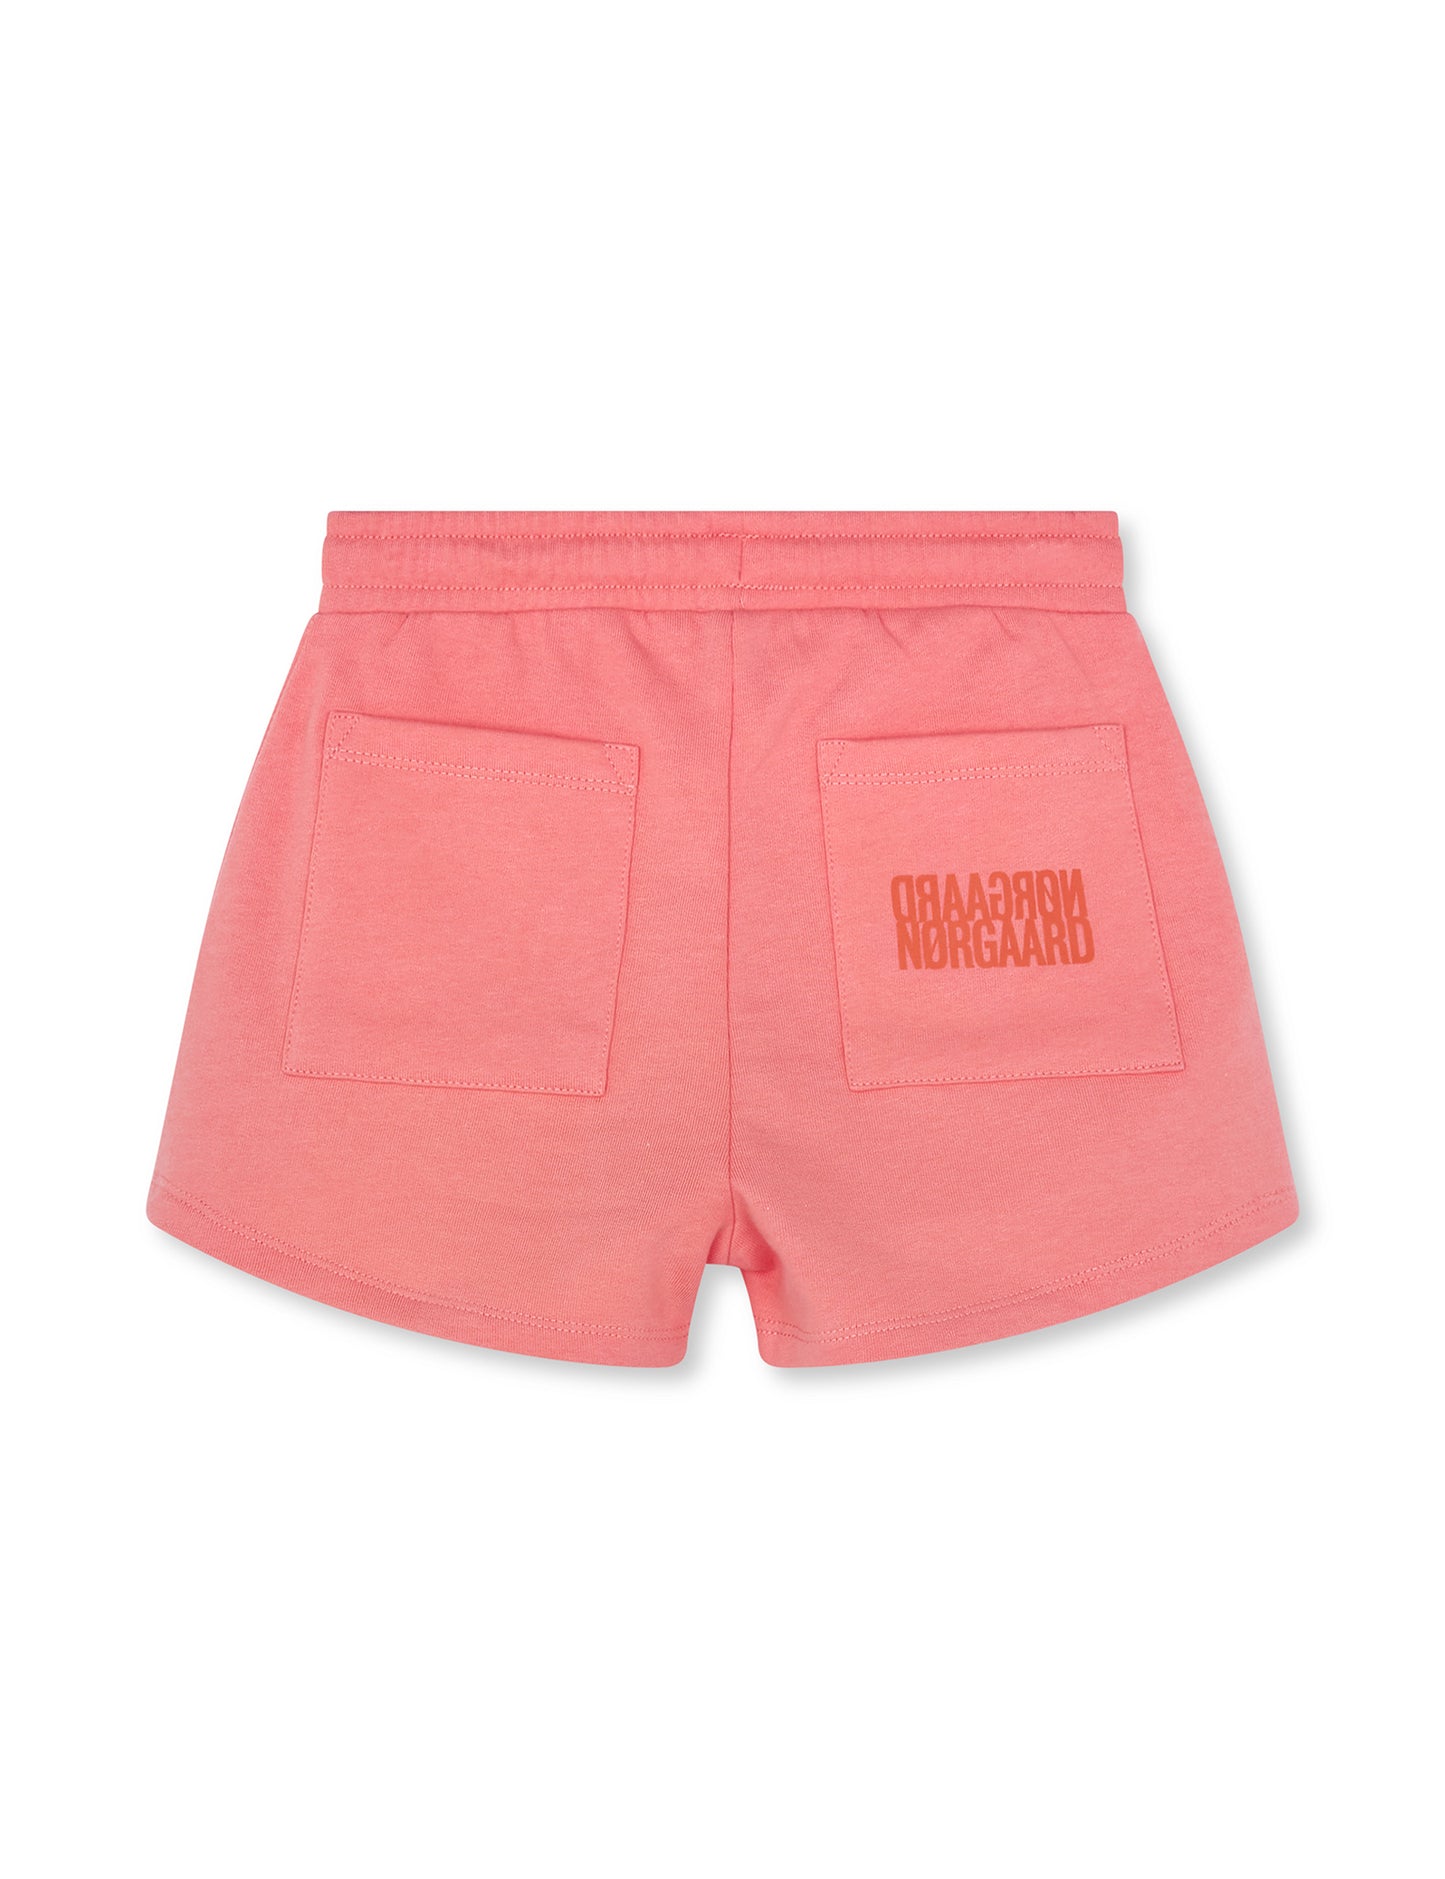 Organic Sweat Prixina Shorts, Shell Pink